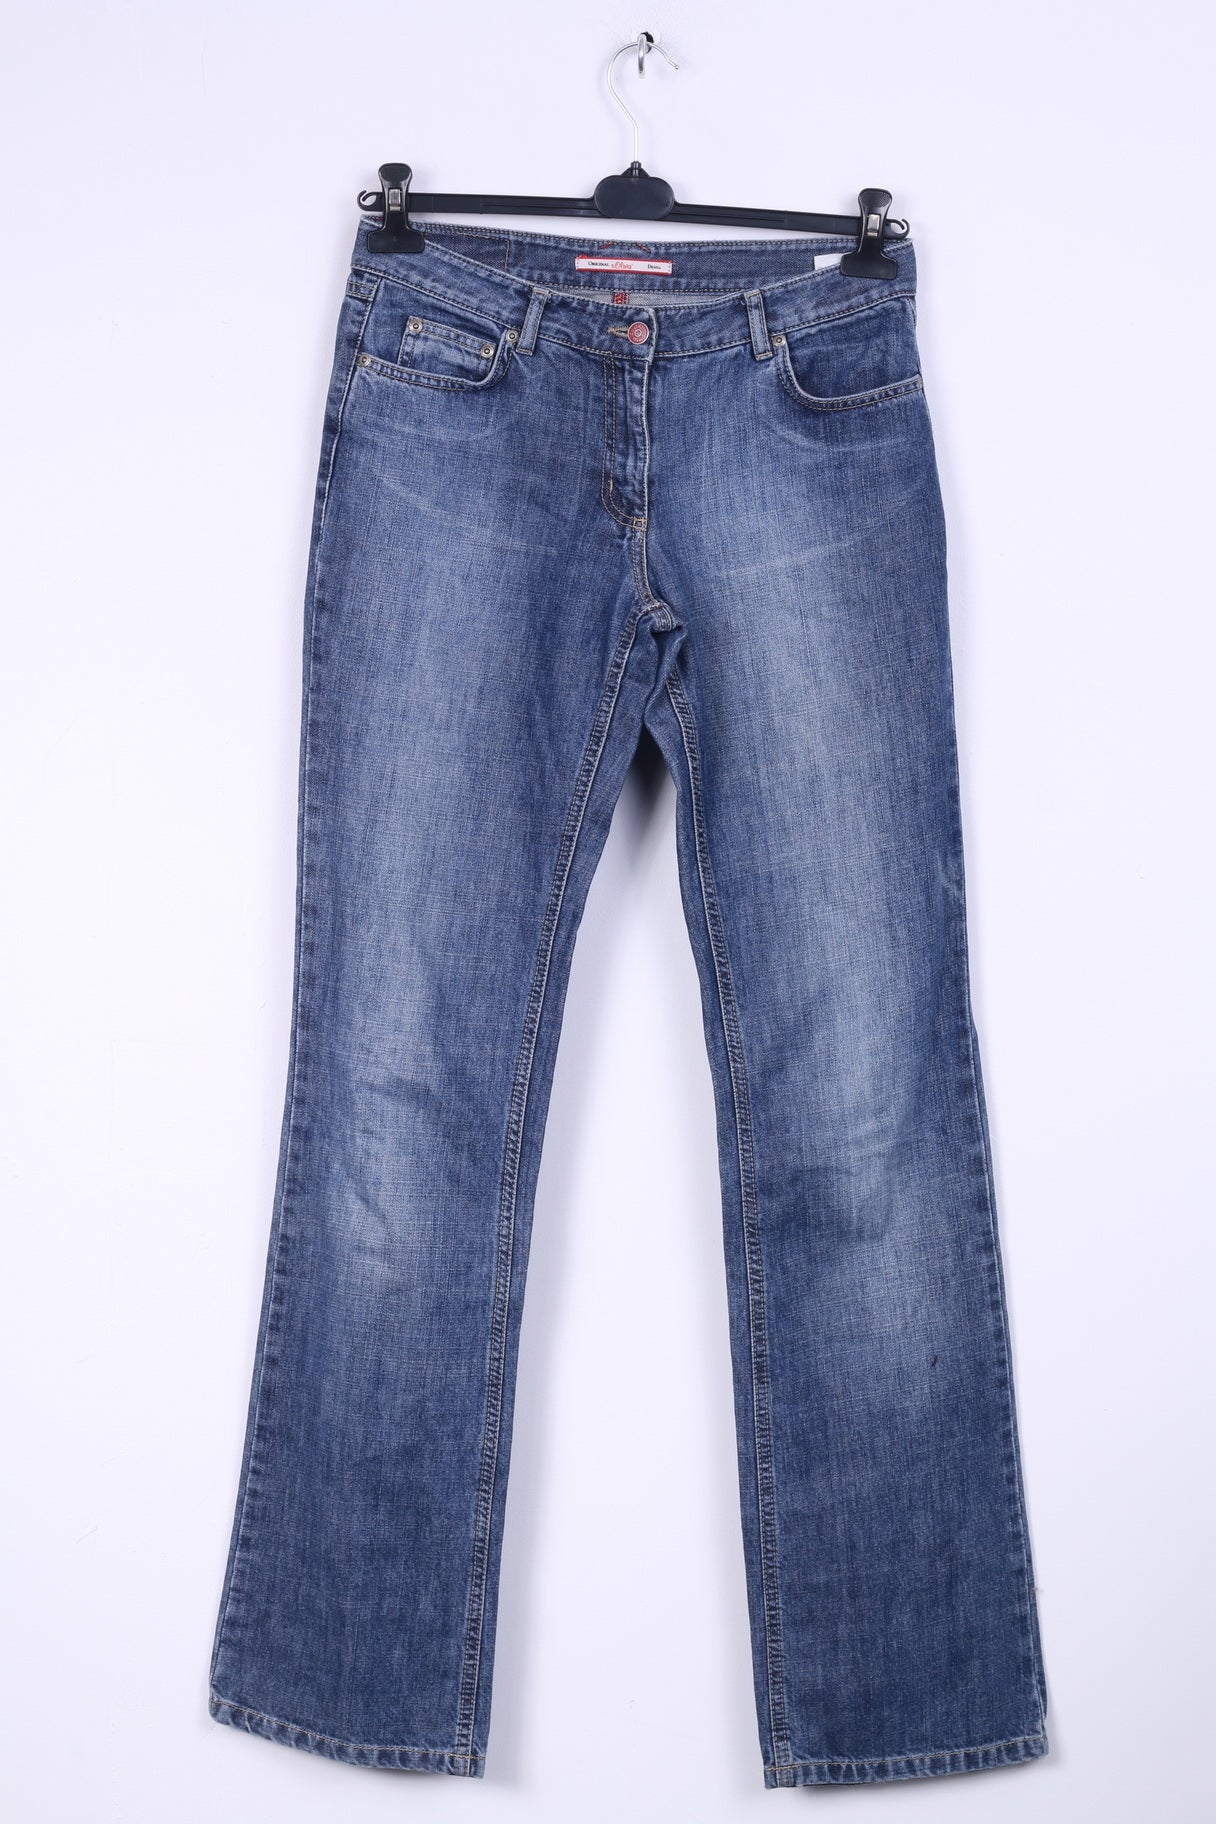 S.Olivier Womens 38 Jeans Trousers Blue Denim L34 Cotton